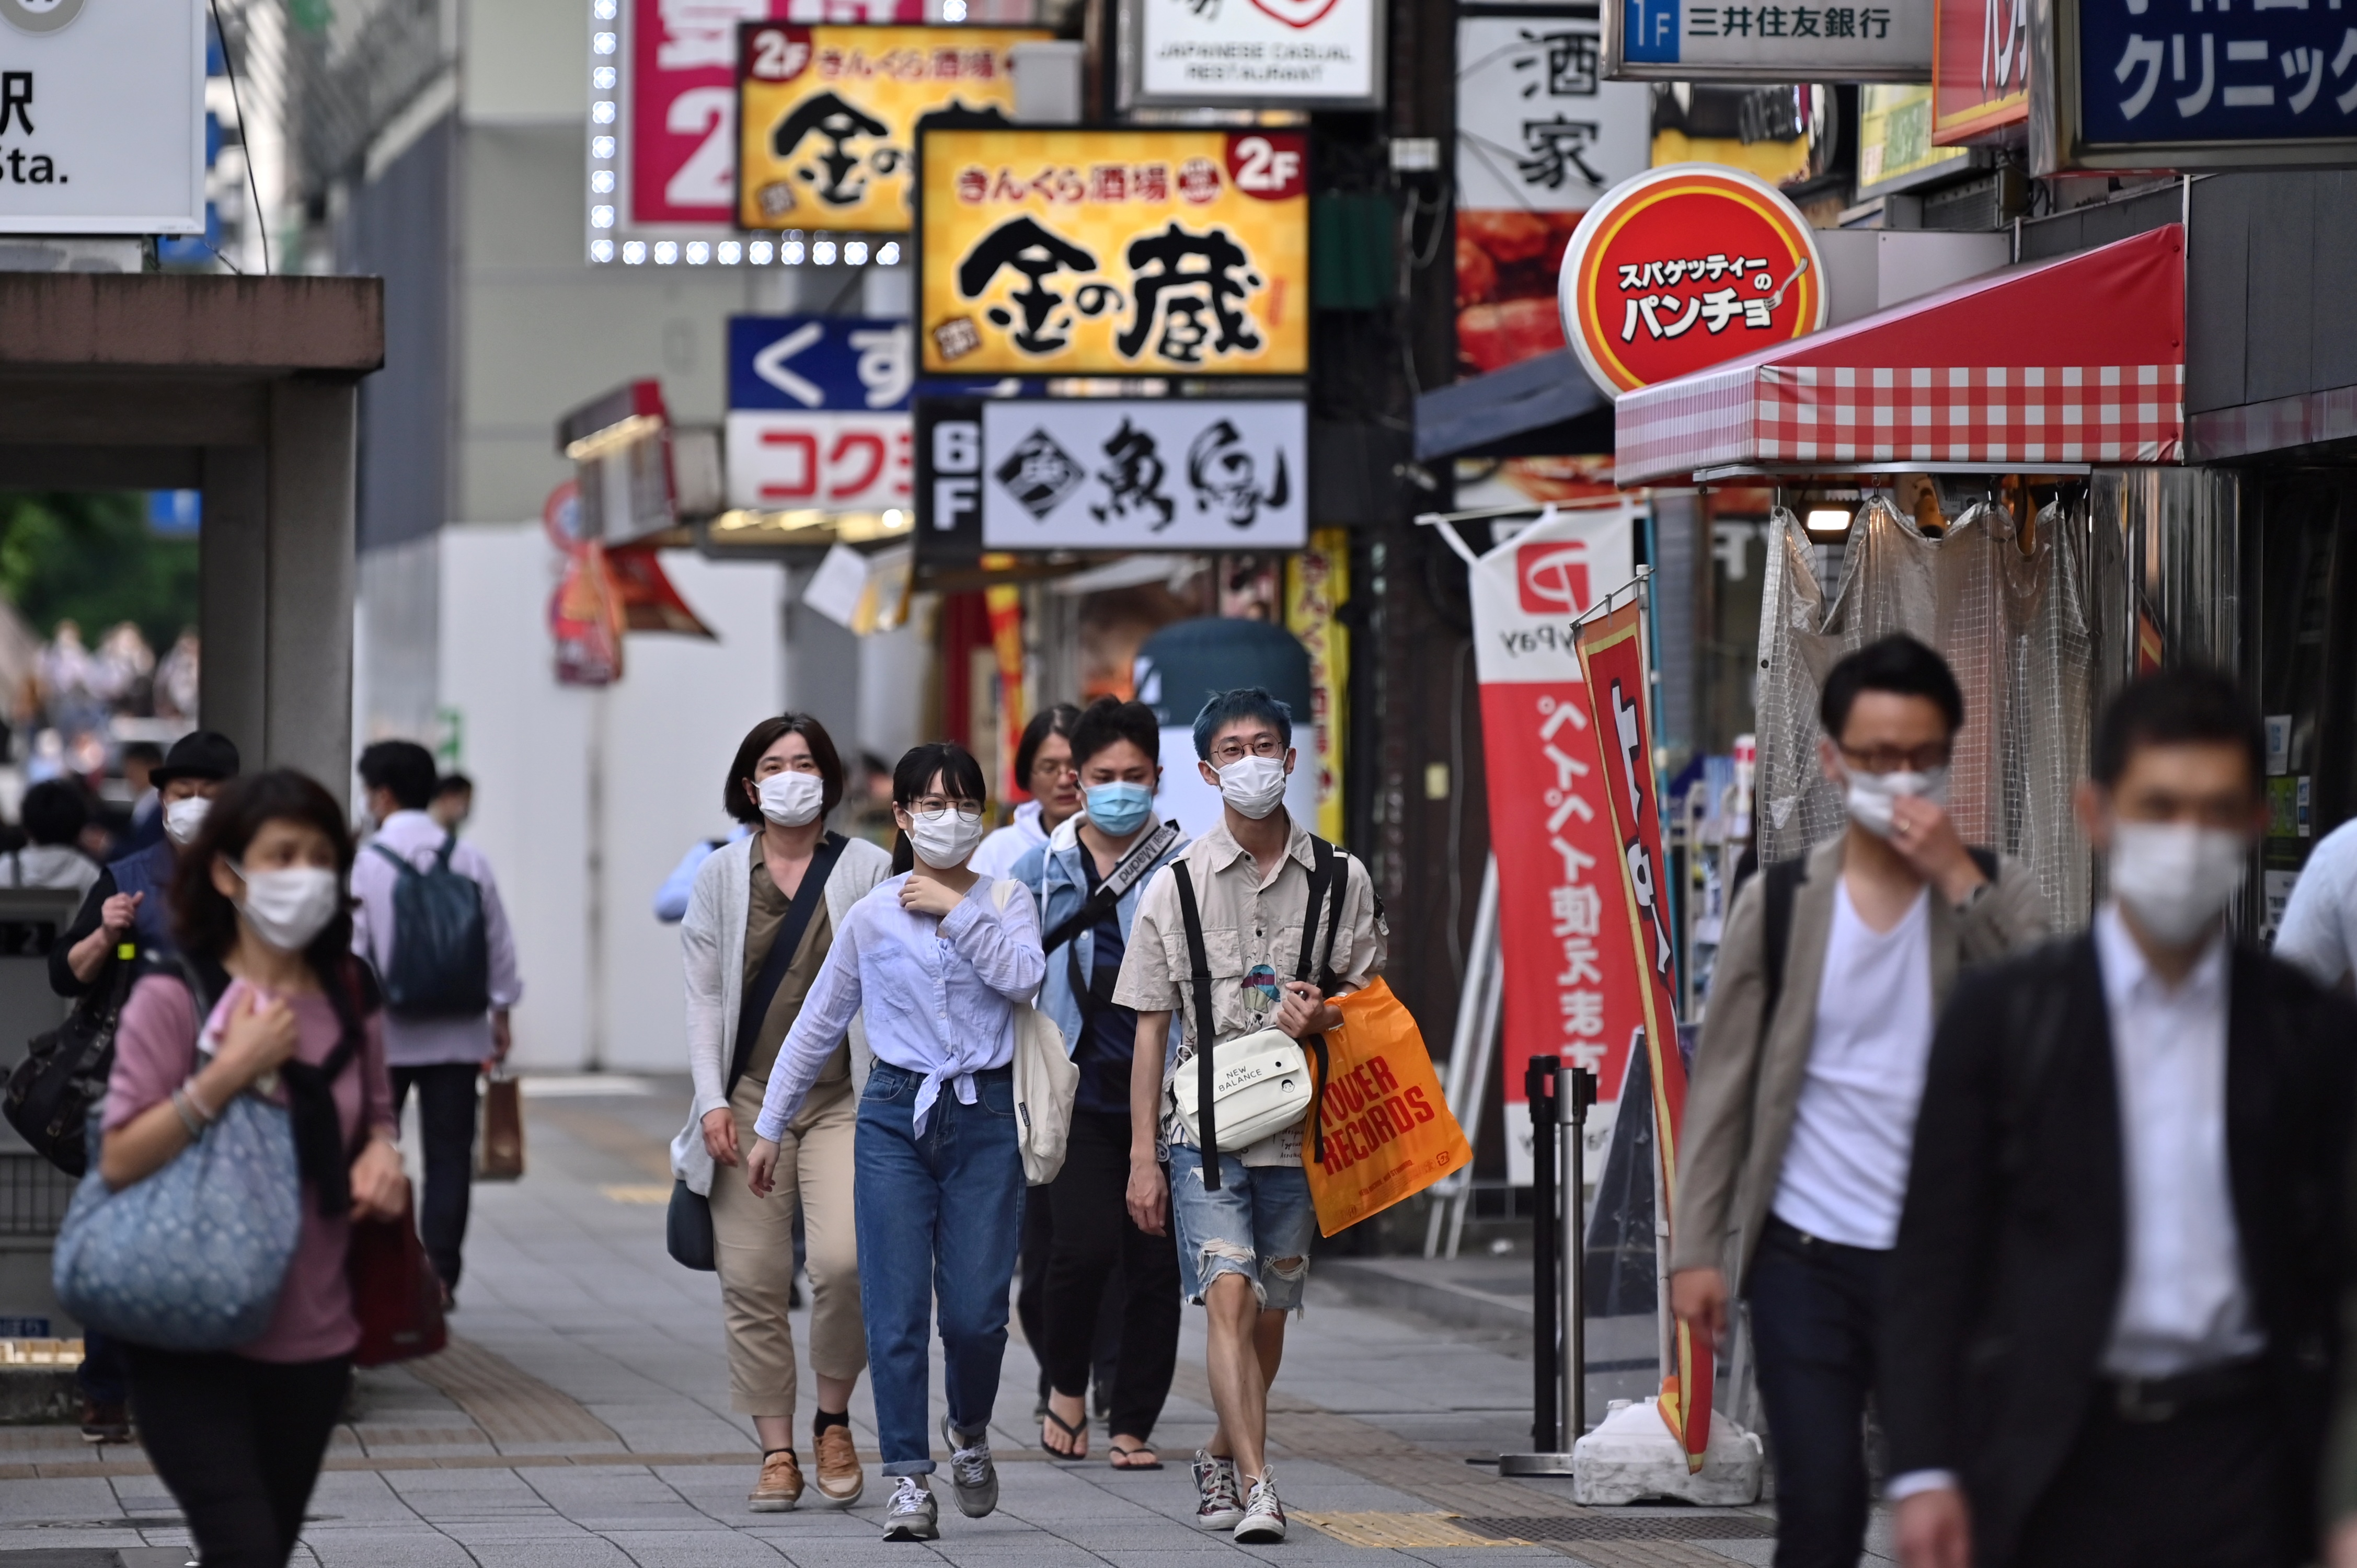 People walk in Tokyo's Akihabara area on May 27.